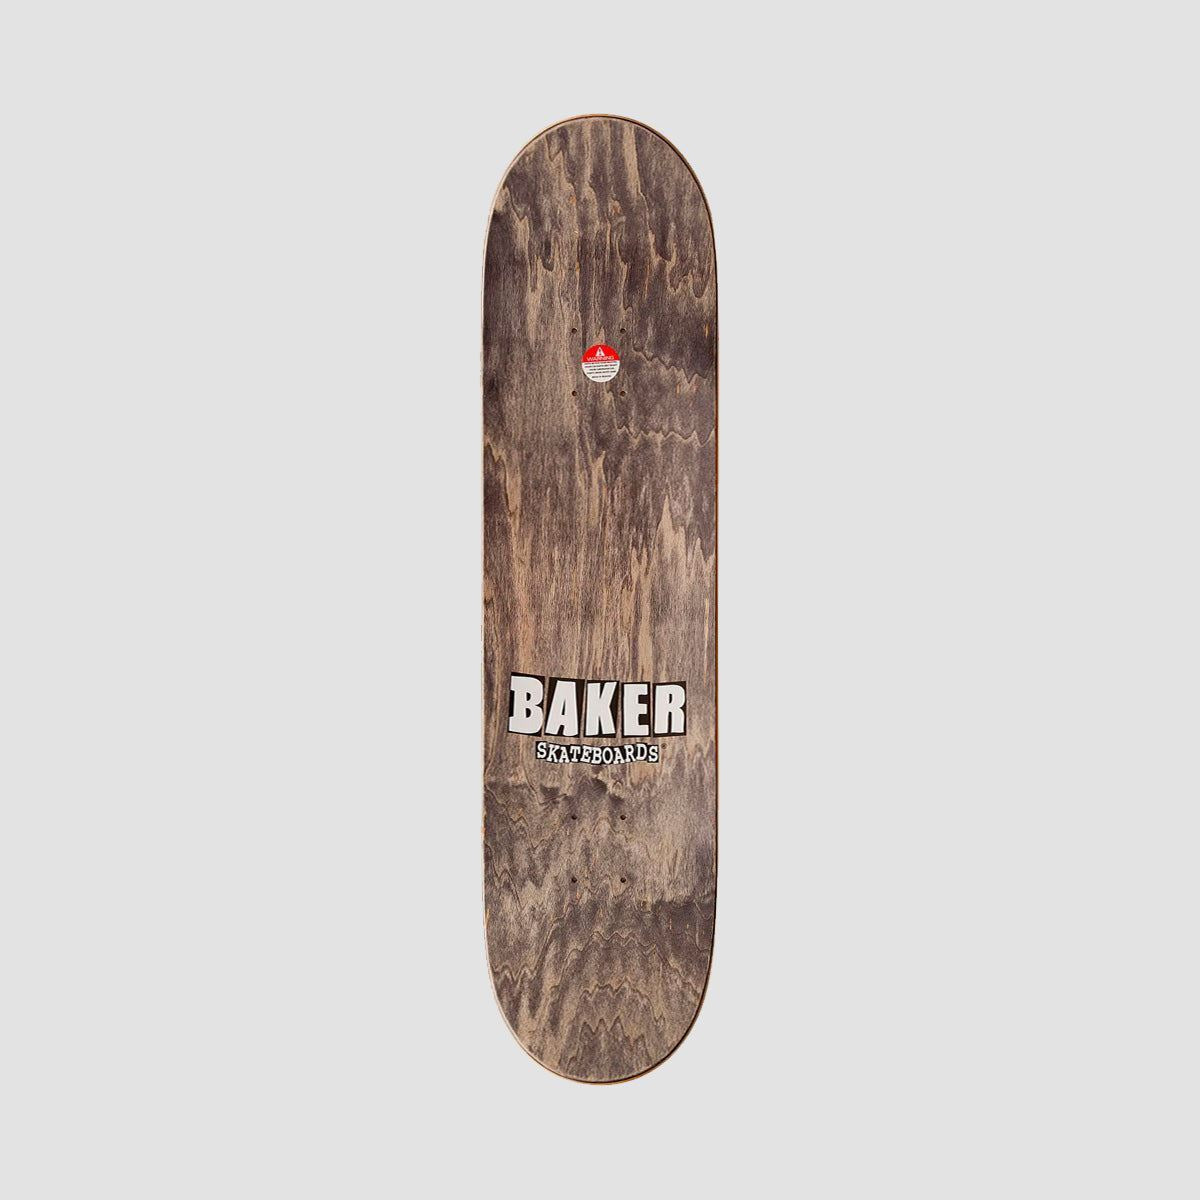 Baker Brand Logo Skateboard Deck Red/Black - 8.475"